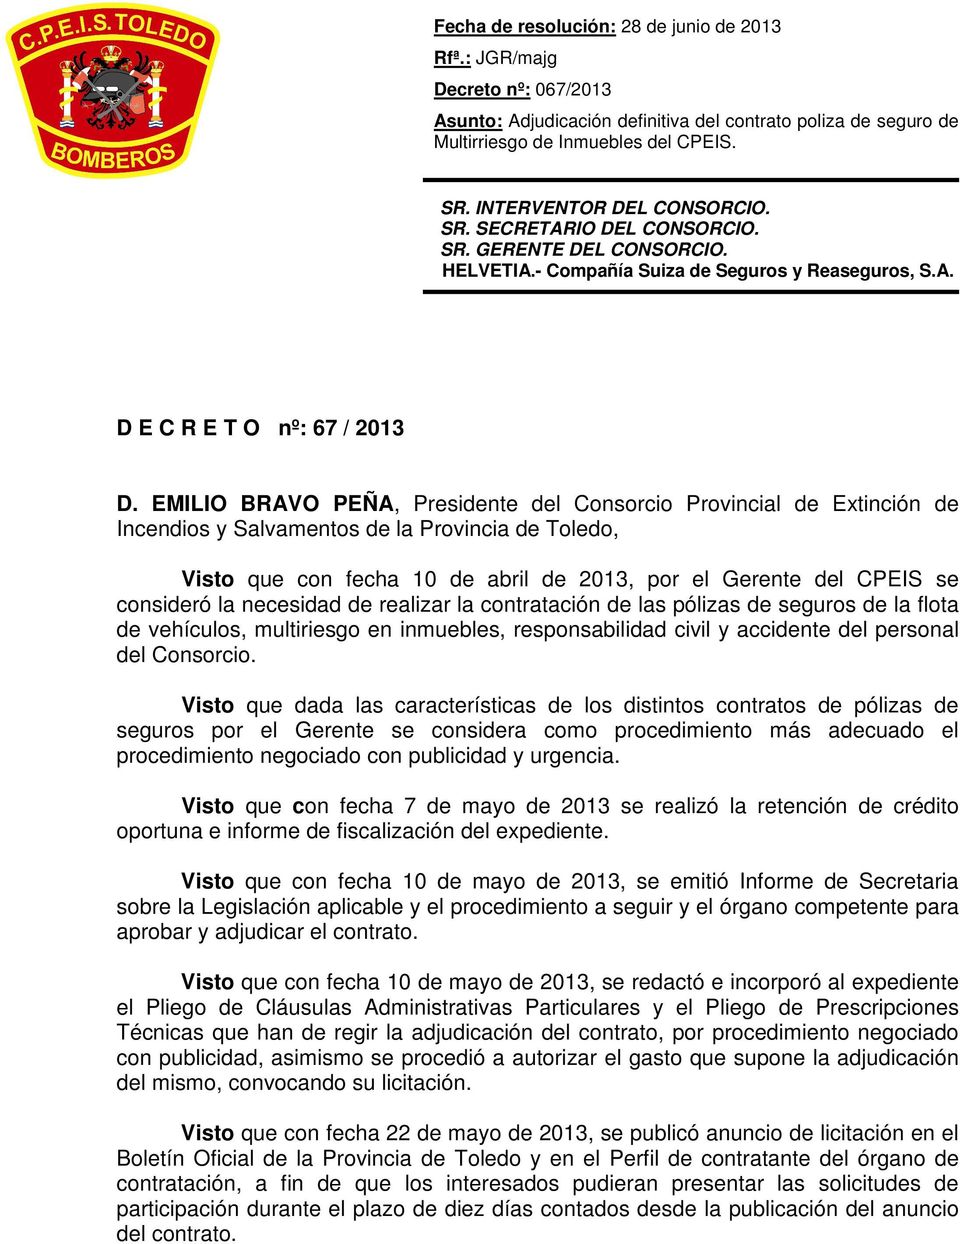 EMILIO BRAVO PEÑA, Presidente del Consorcio Provincial de Extinción de Incendios y Salvamentos de la Provincia de Toledo, Visto que con fecha 10 de abril de 2013, por el Gerente del CPEIS se